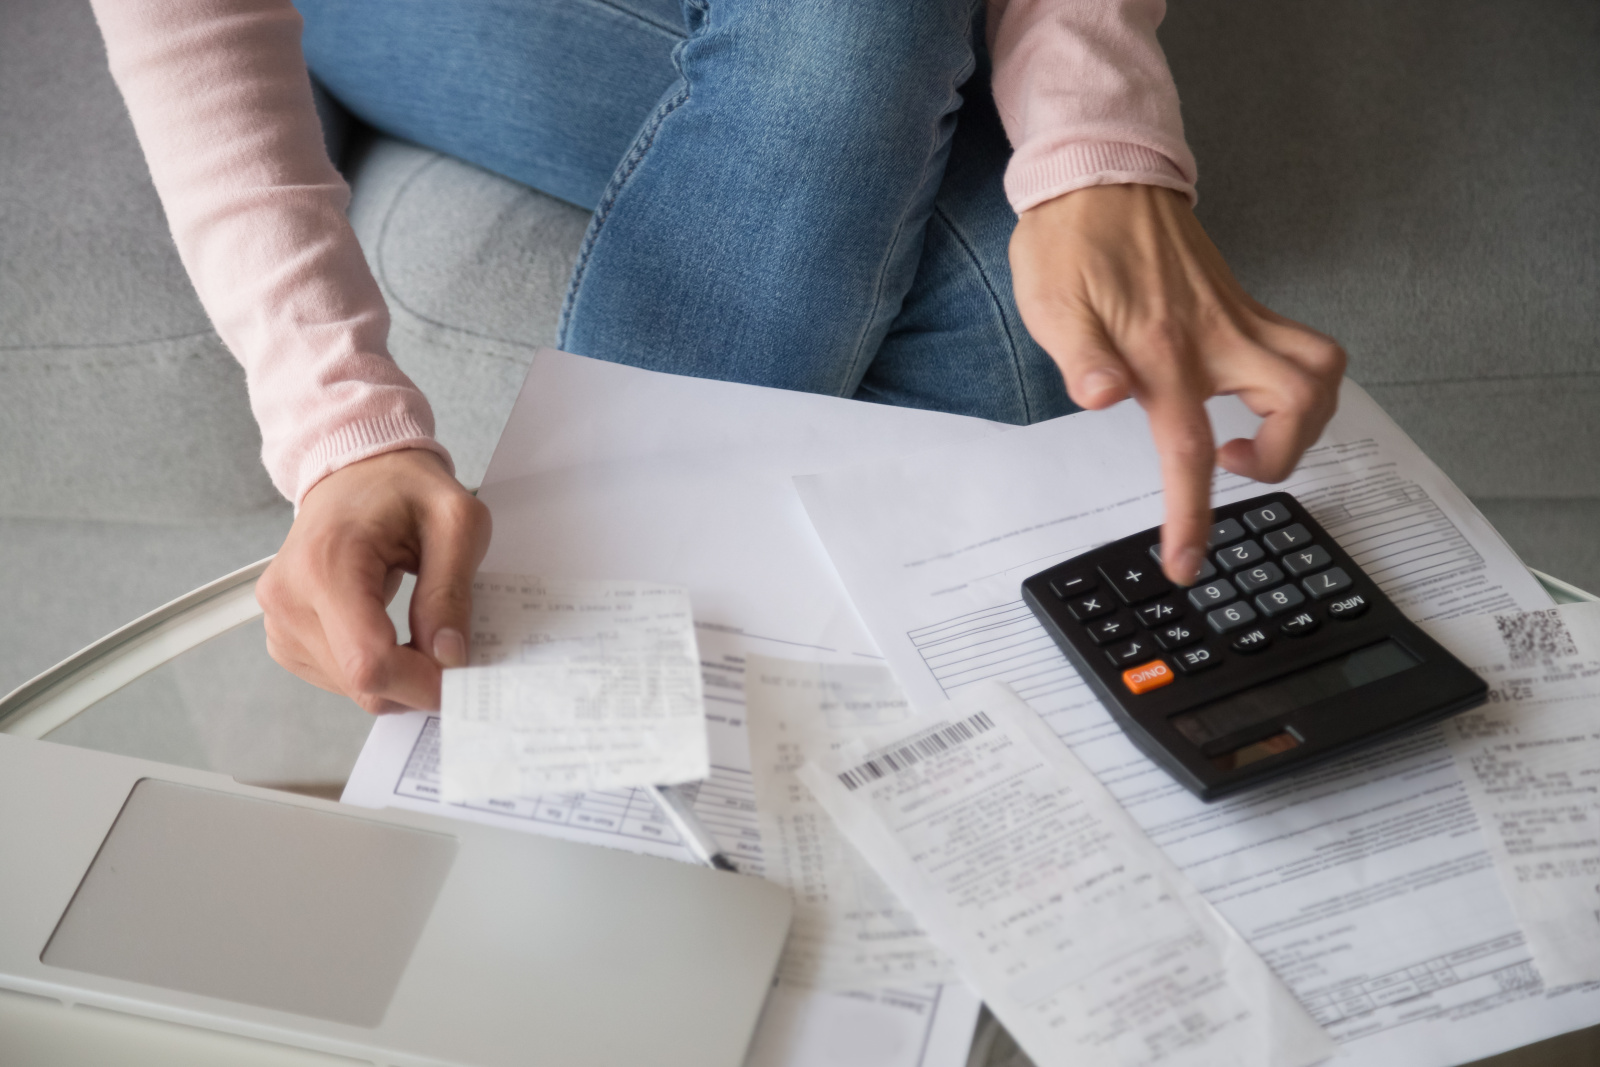 Žena držící v ruce účtenku při počítání na kalkulačce.